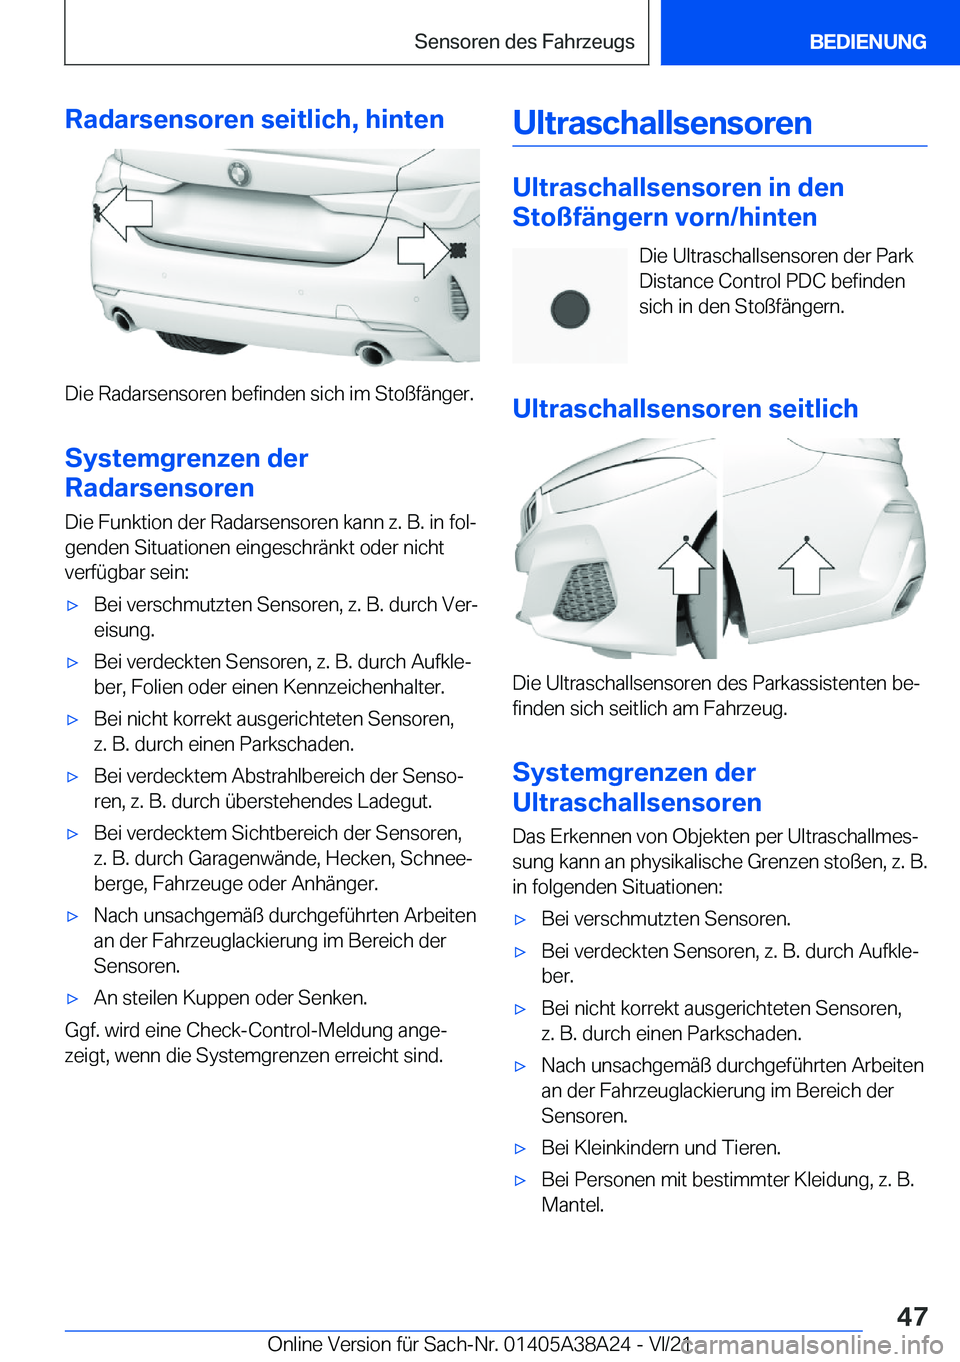 BMW 4 SERIES GRAN COUPE 2022  Betriebsanleitungen (in German) �R�a�d�a�r�s�e�n�s�o�r�e�n��s�e�i�t�l�i�c�h�,��h�i�n�t�e�n
�D�i�e��R�a�d�a�r�s�e�n�s�o�r�e�n��b�e�f�i�n�d�e�n��s�i�c�h��i�m��S�t�o�